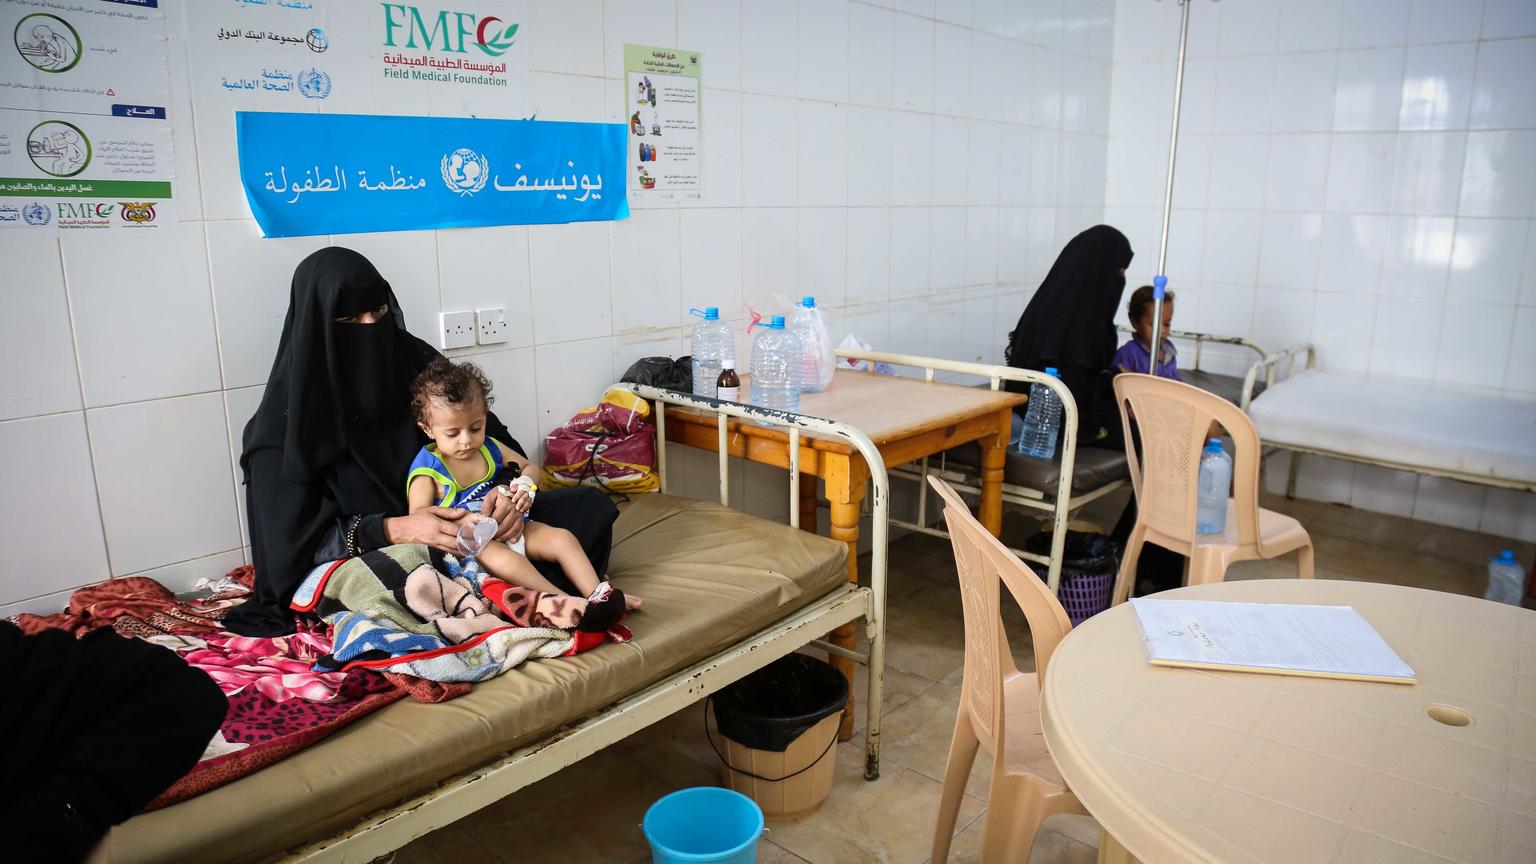 La mayoría de los niños y las familias en Yemen sobreviven de la asistencia humanitaria.